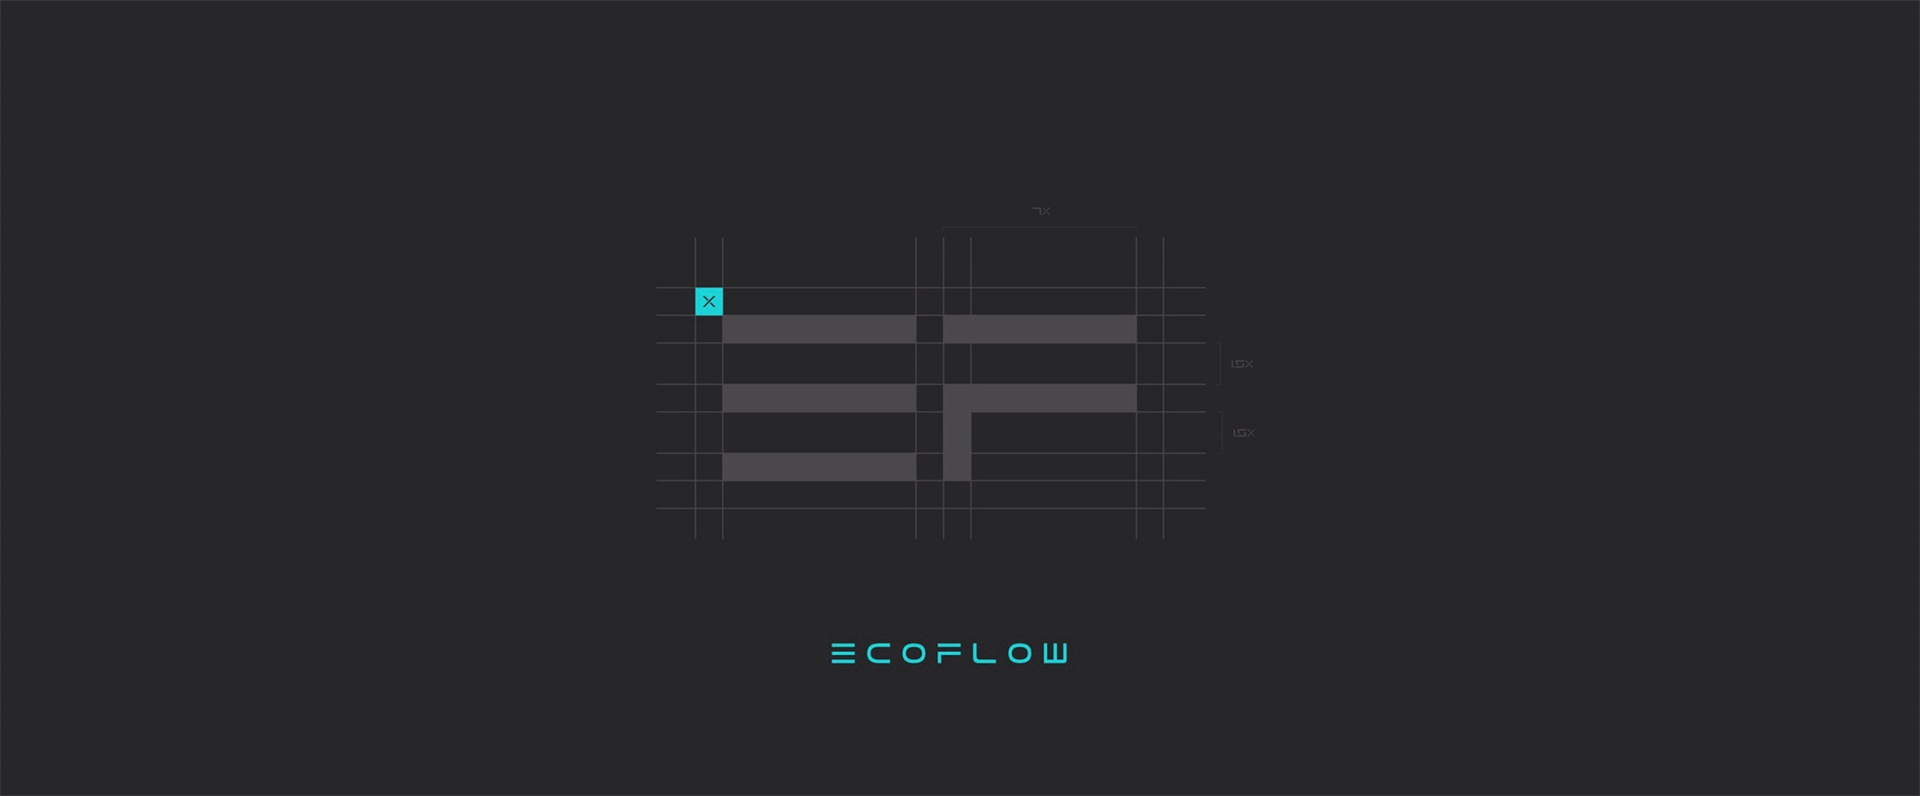 ECOFLOW_04.jpg